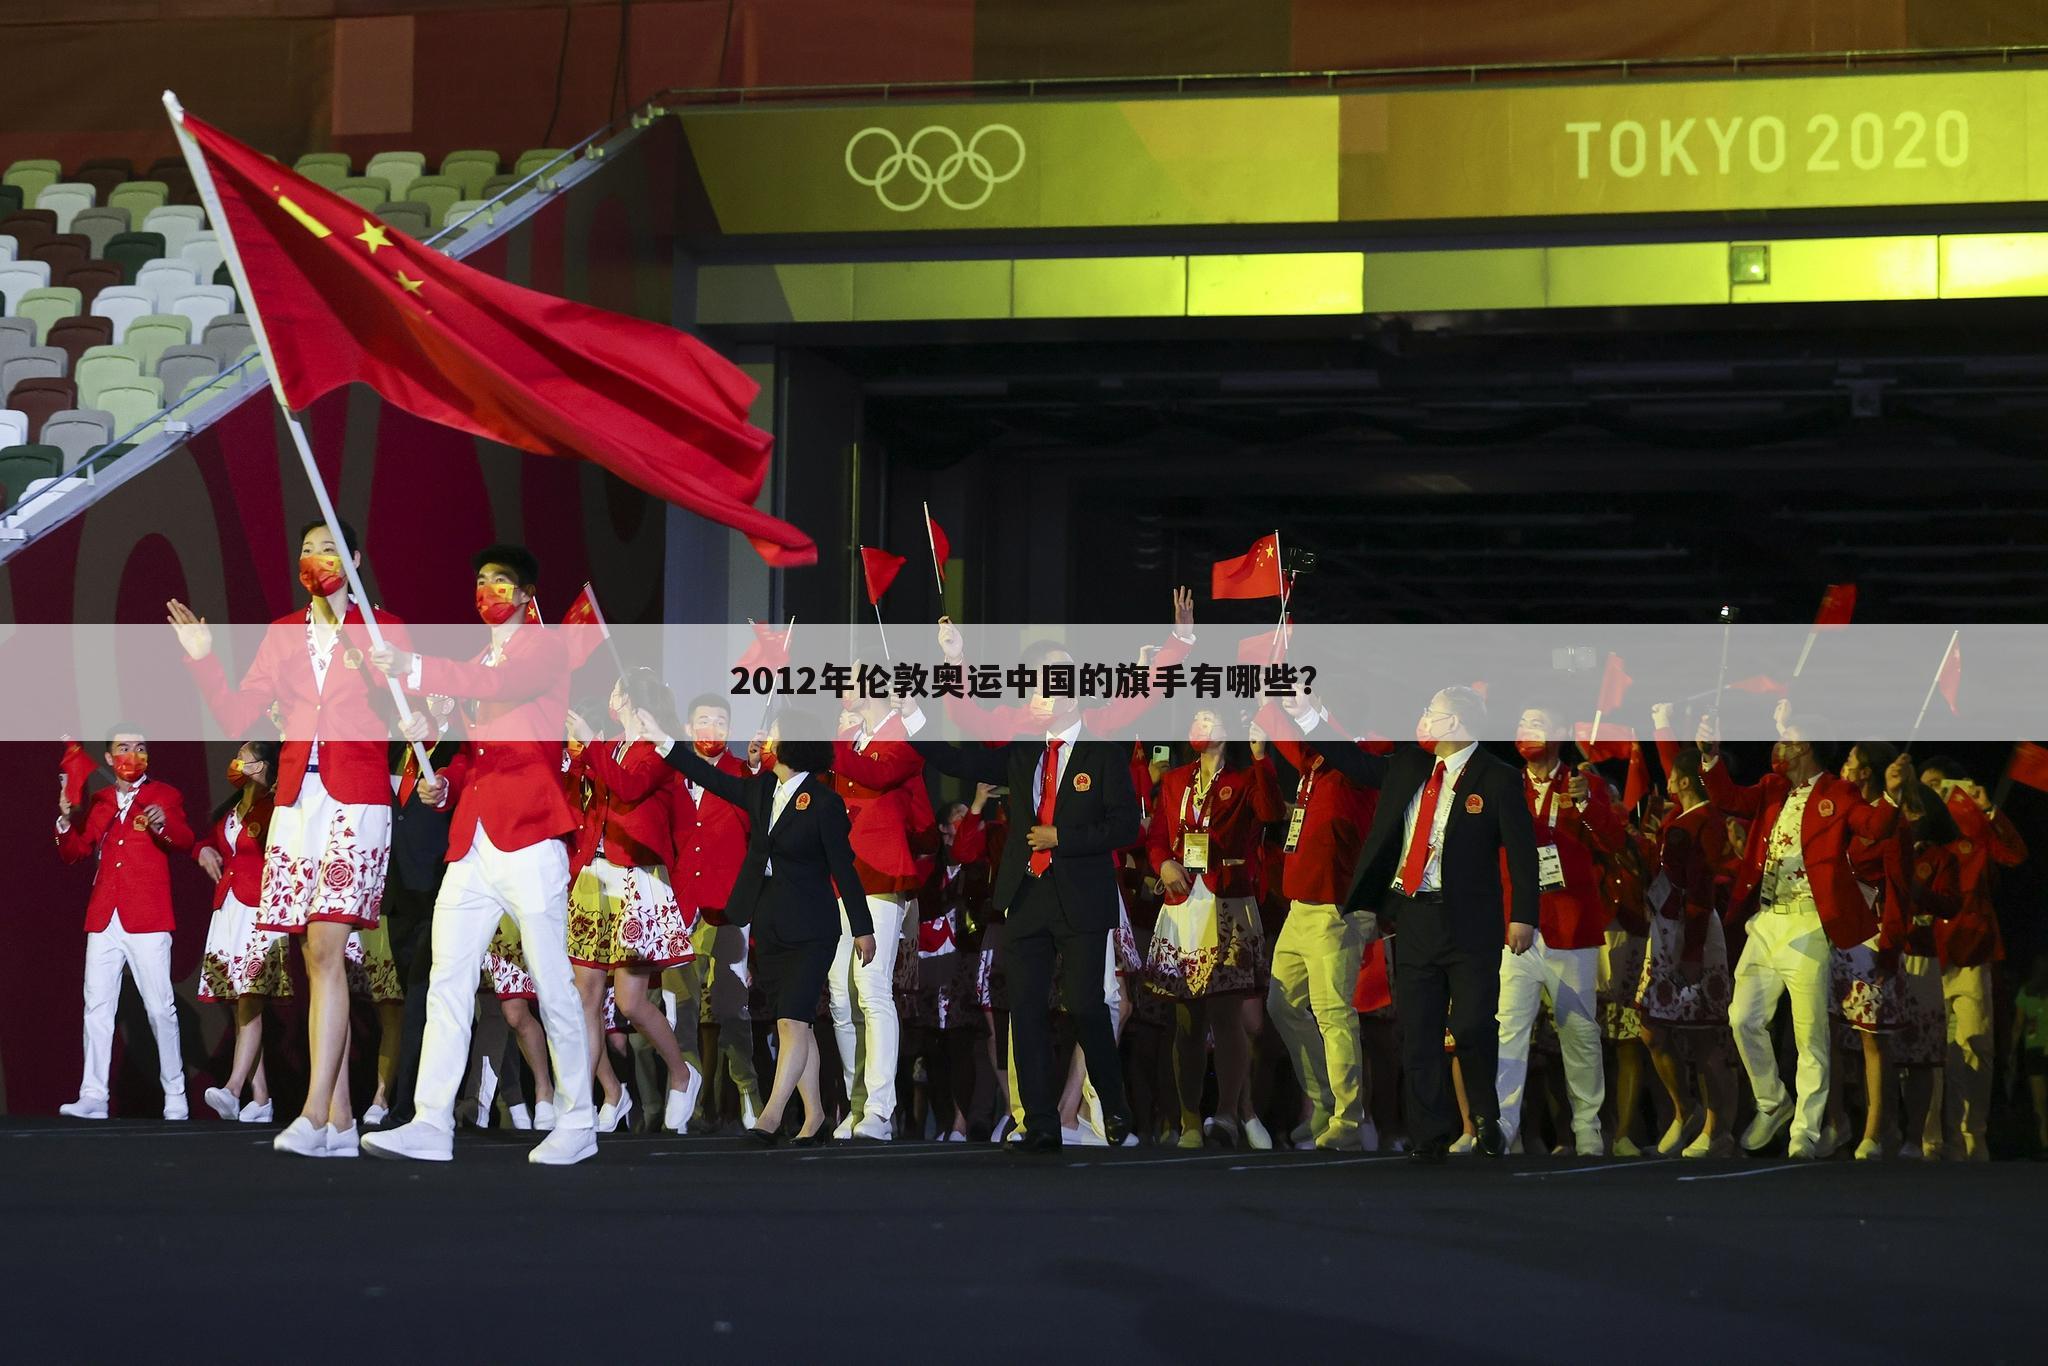 <b>﹝2012年伦敦奥运会闭幕式﹞2012年伦敦奥运会闭幕式上担任中国代表队旗手的是</b>